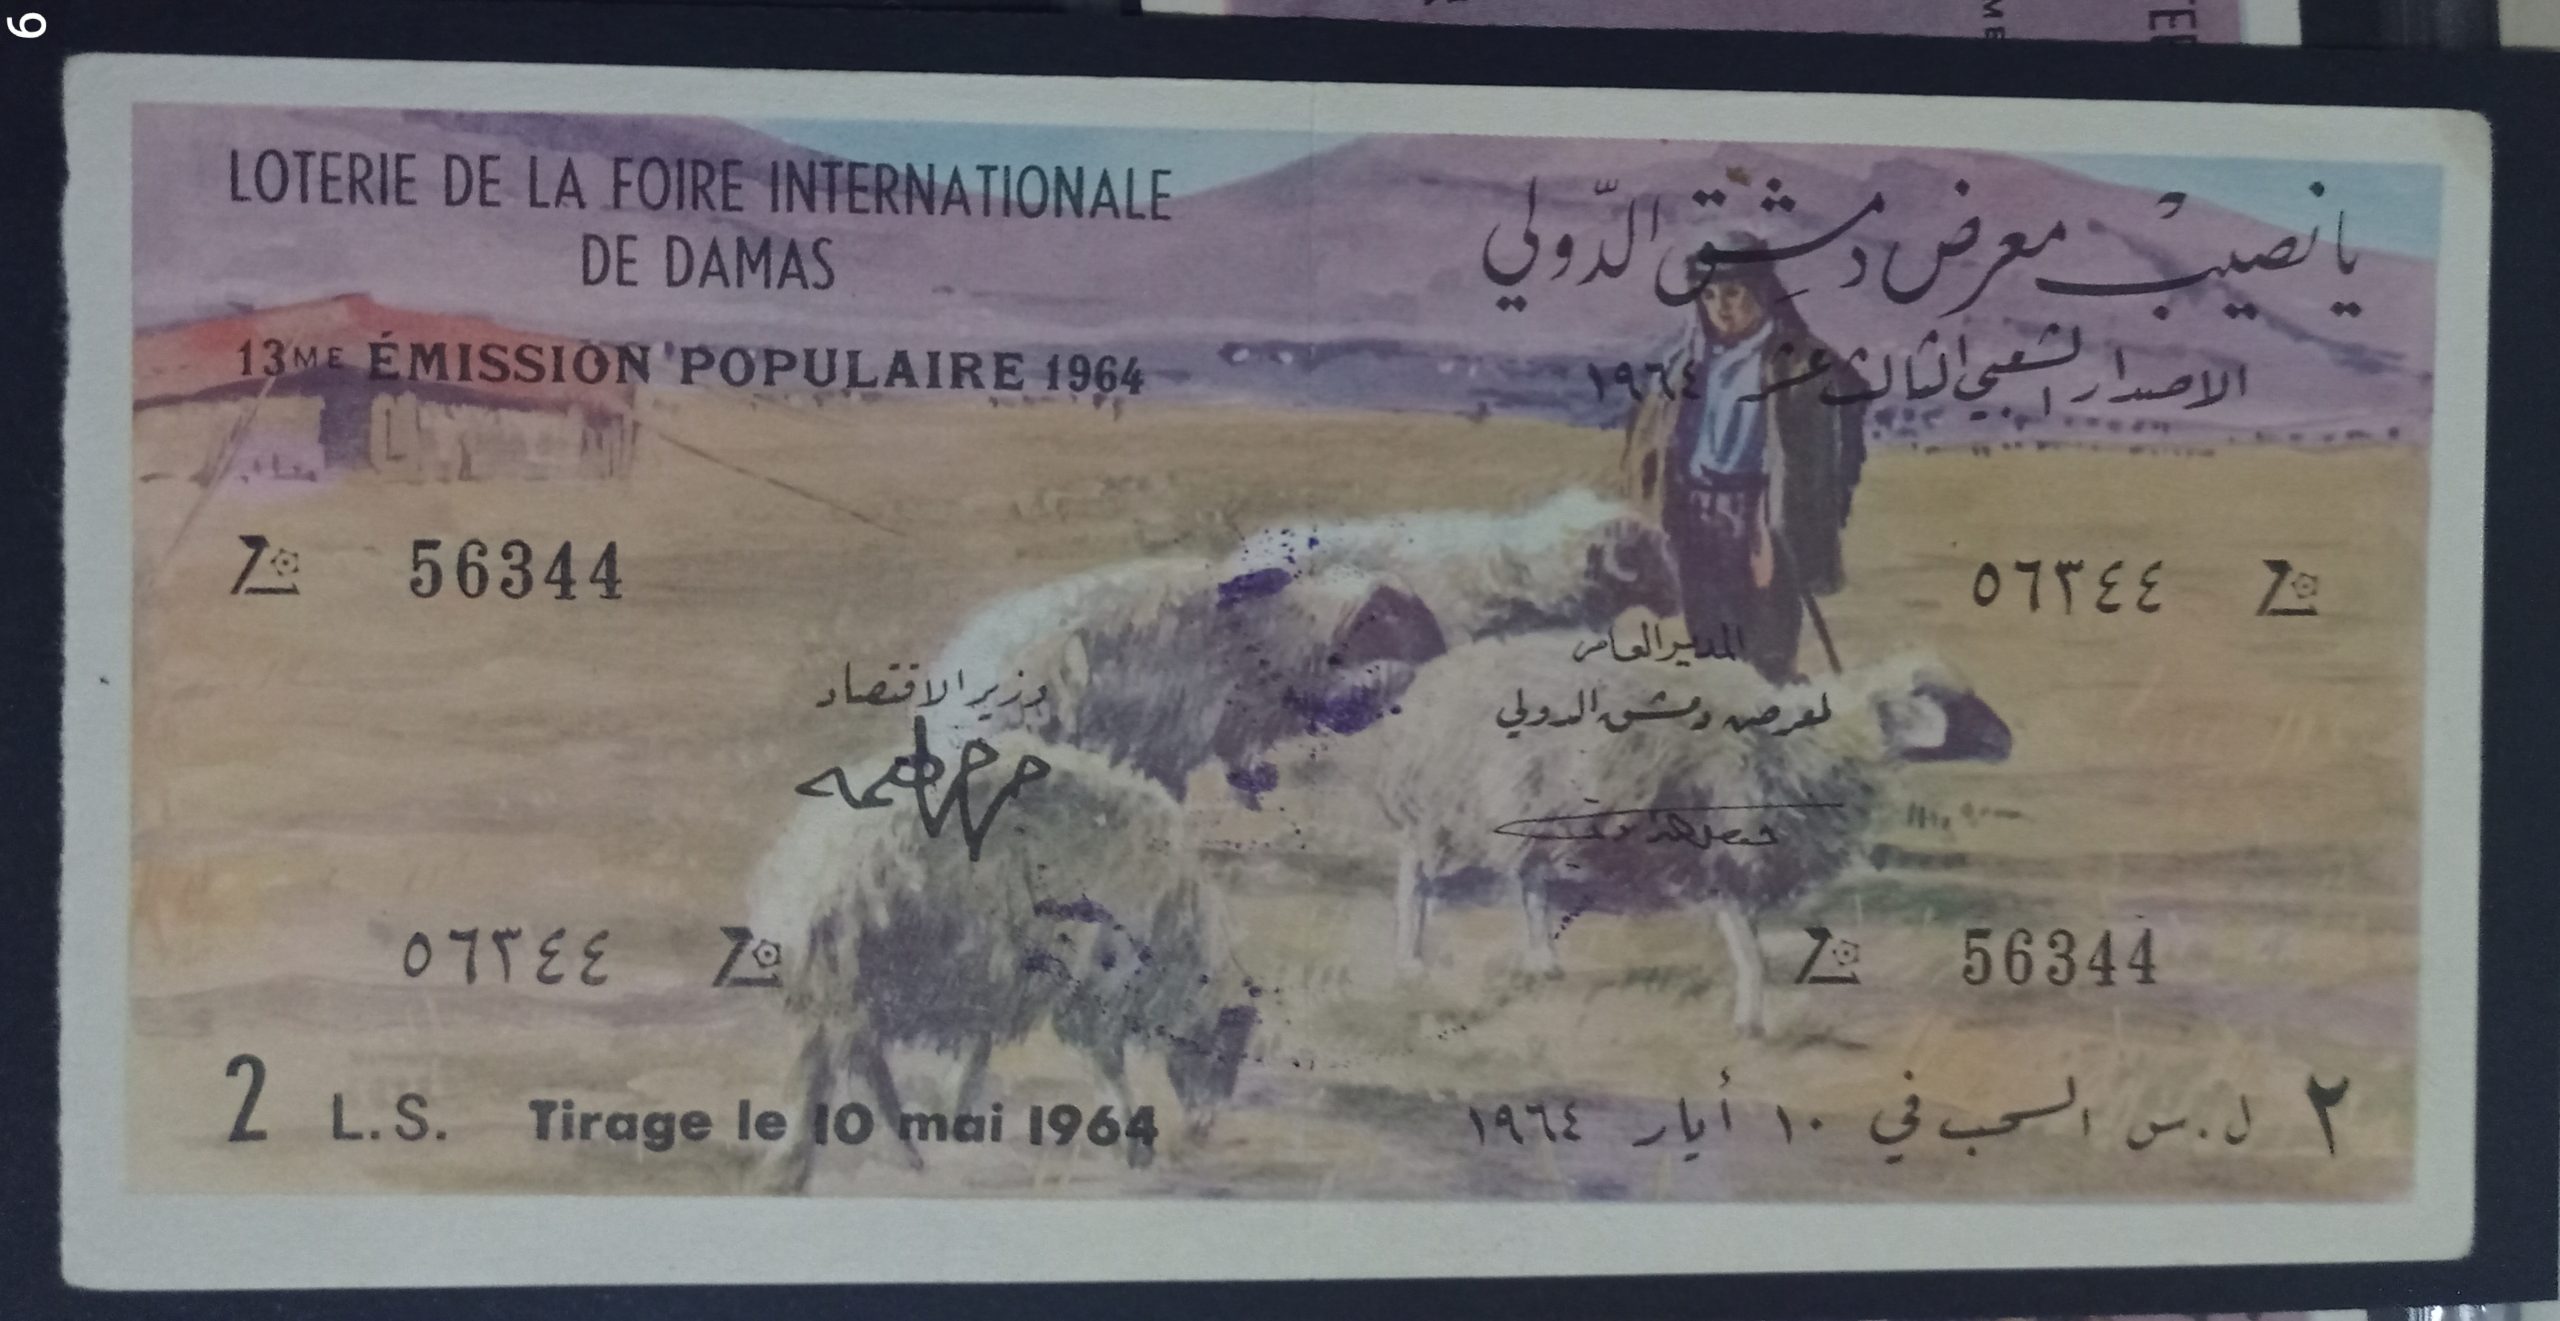 التاريخ السوري المعاصر -  يانصيب معرض دمشق الدولي - الإصدار الشعبي الثالث عشر عام 1964